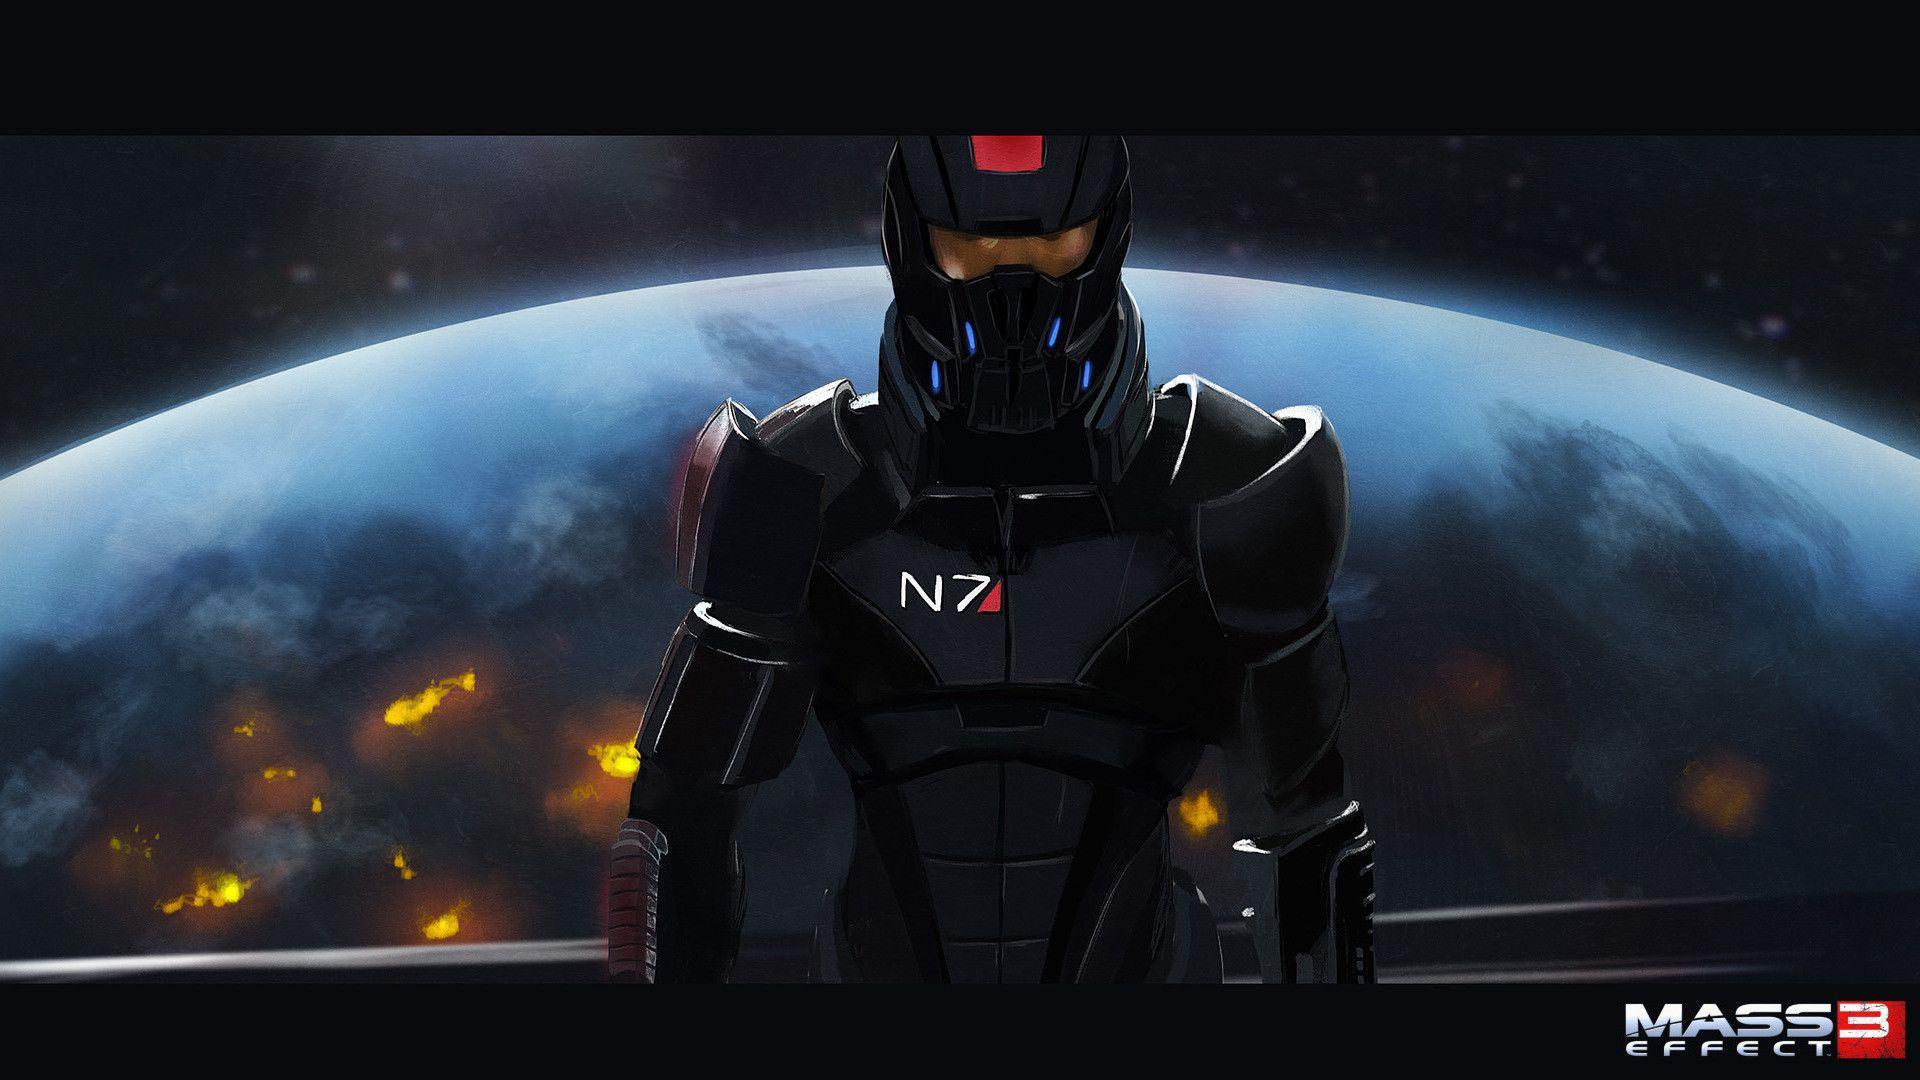 N7 Mass Effect3 Wallpaper